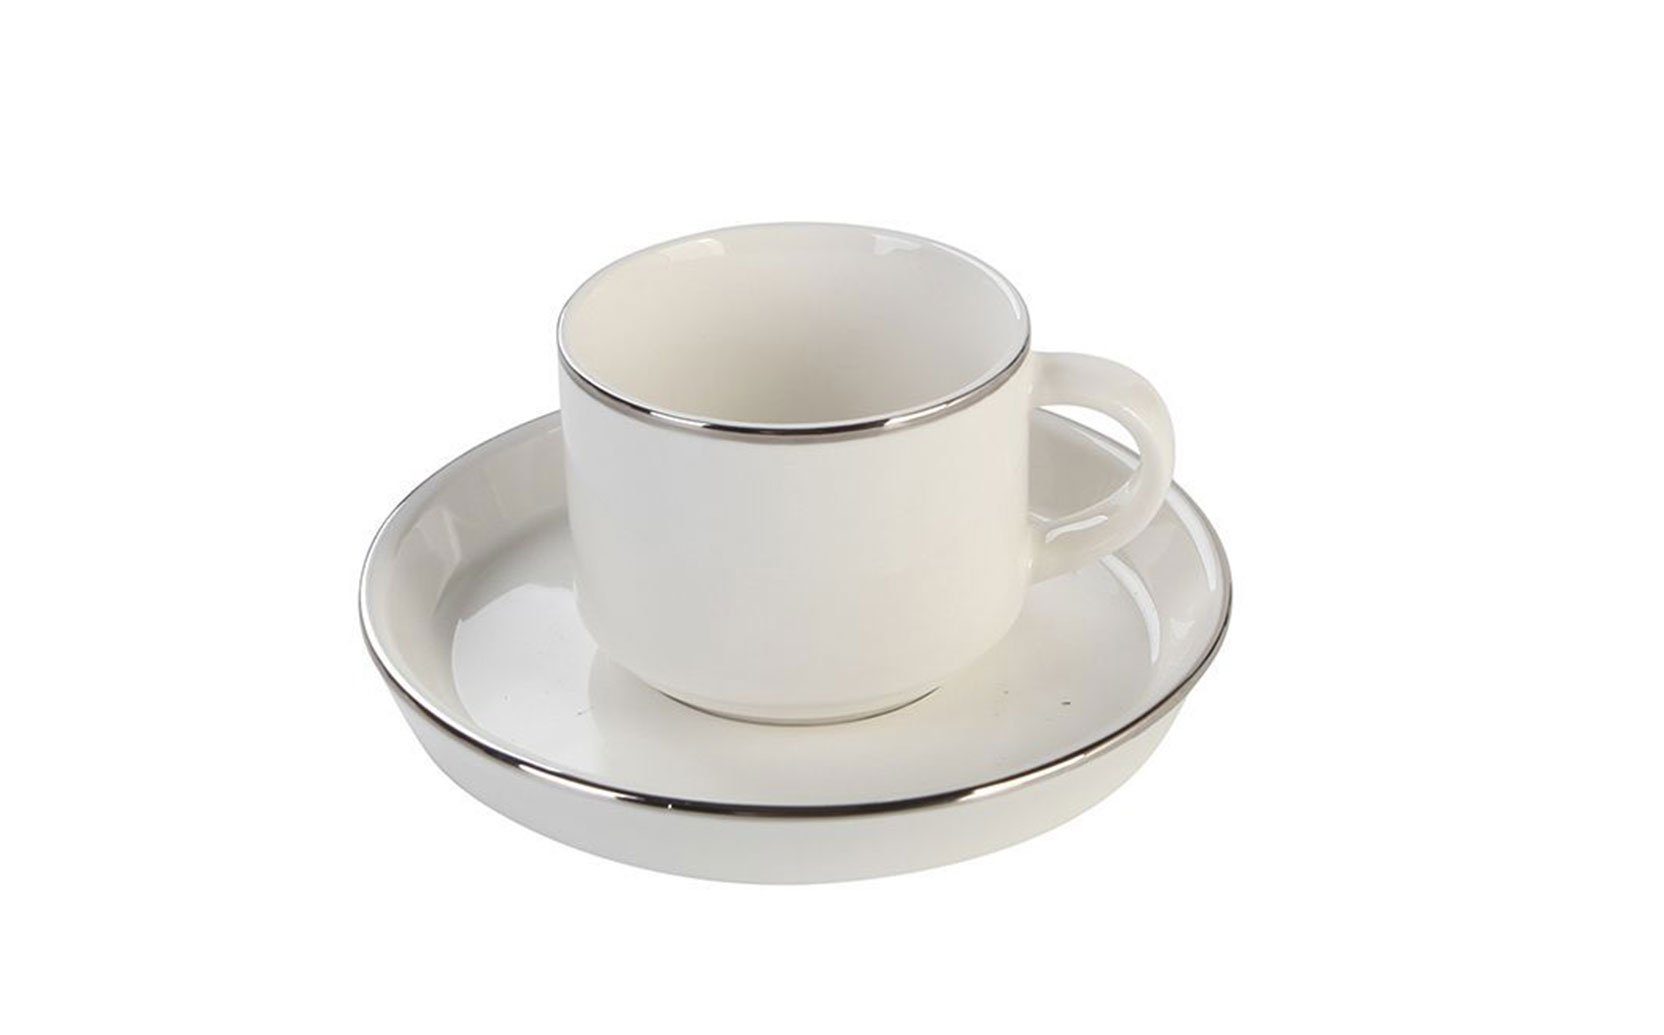 Lunel, Özberk Silber 6 umrandet, Porzellan, Kaffeebecher Stück 12-teilig Porzellan Tasse